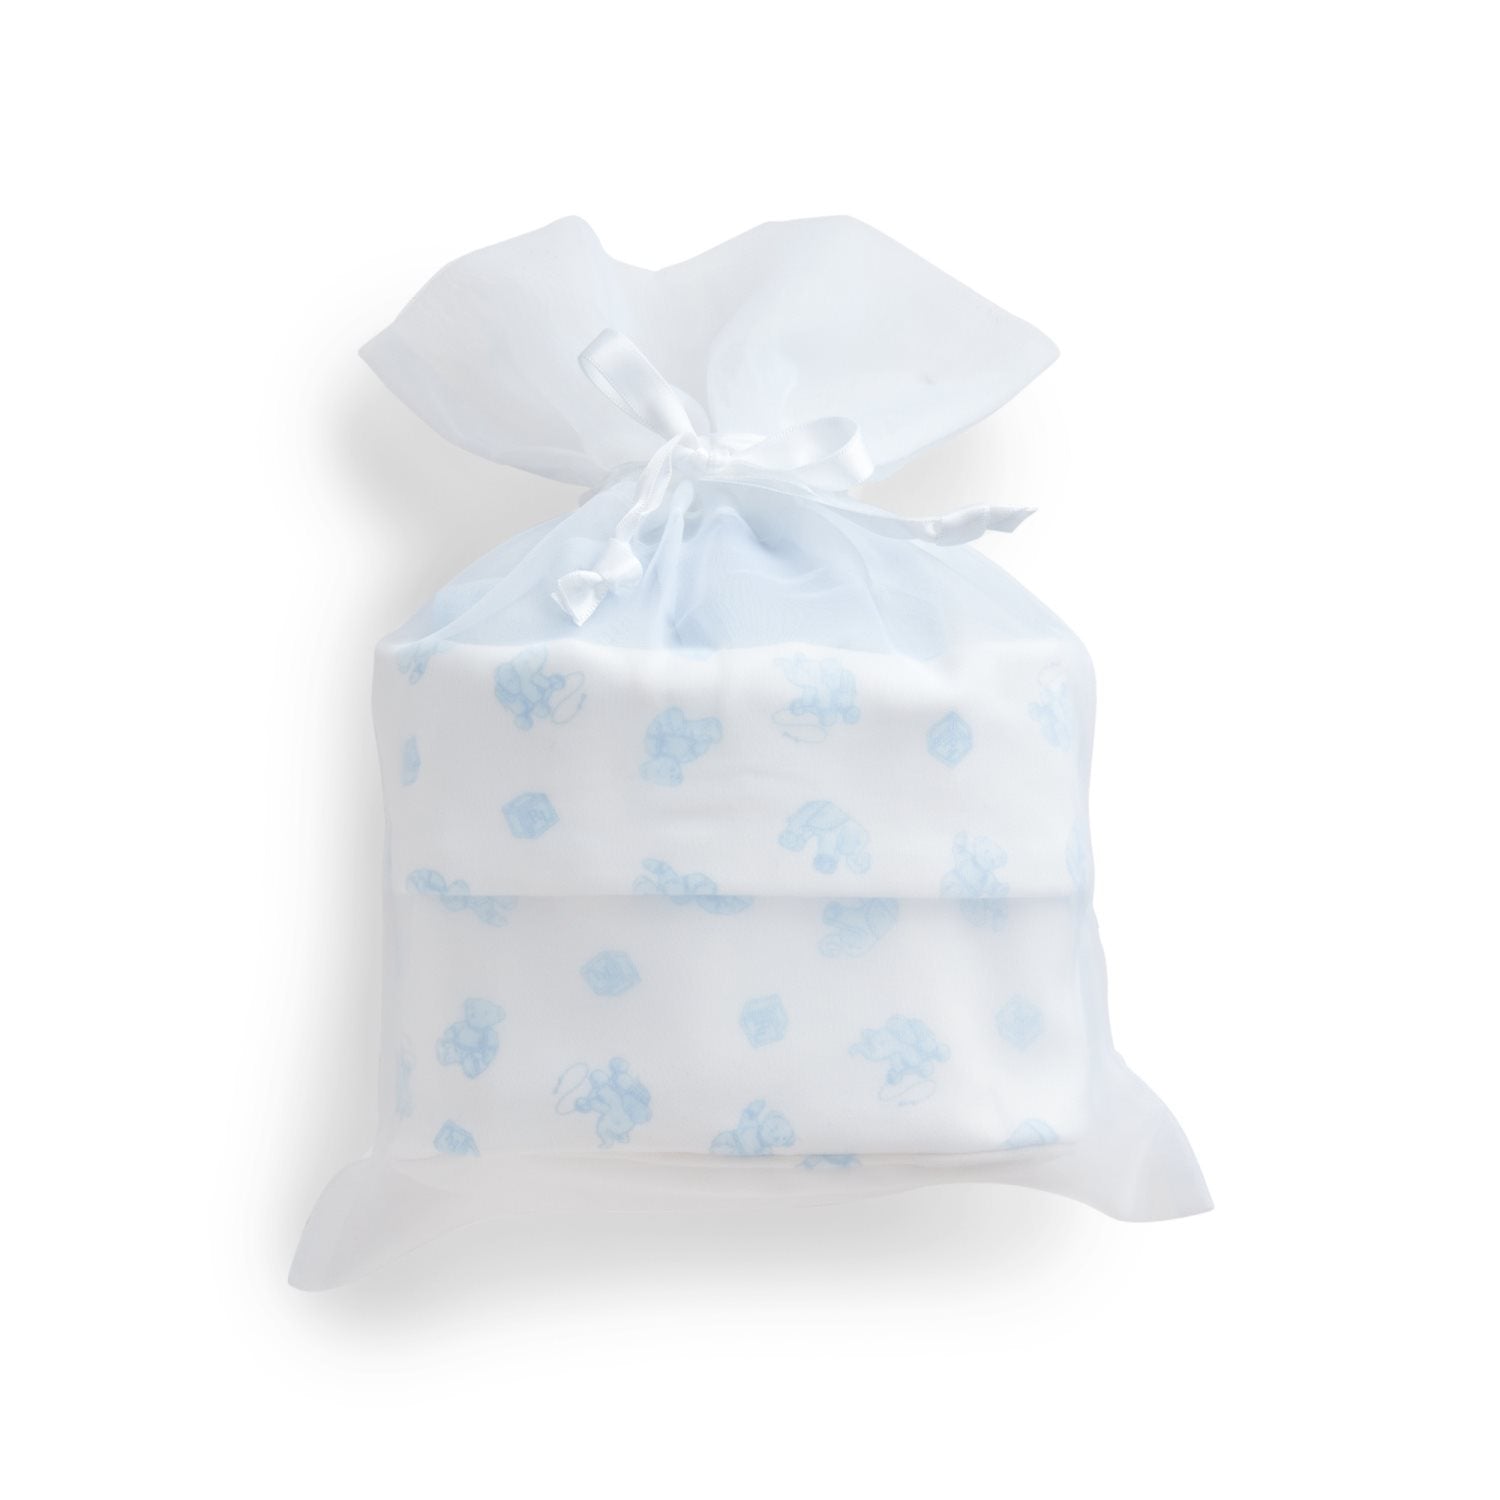 Ralph Lauren Baby Boy's Pale Blue 4 Piece Gift Set